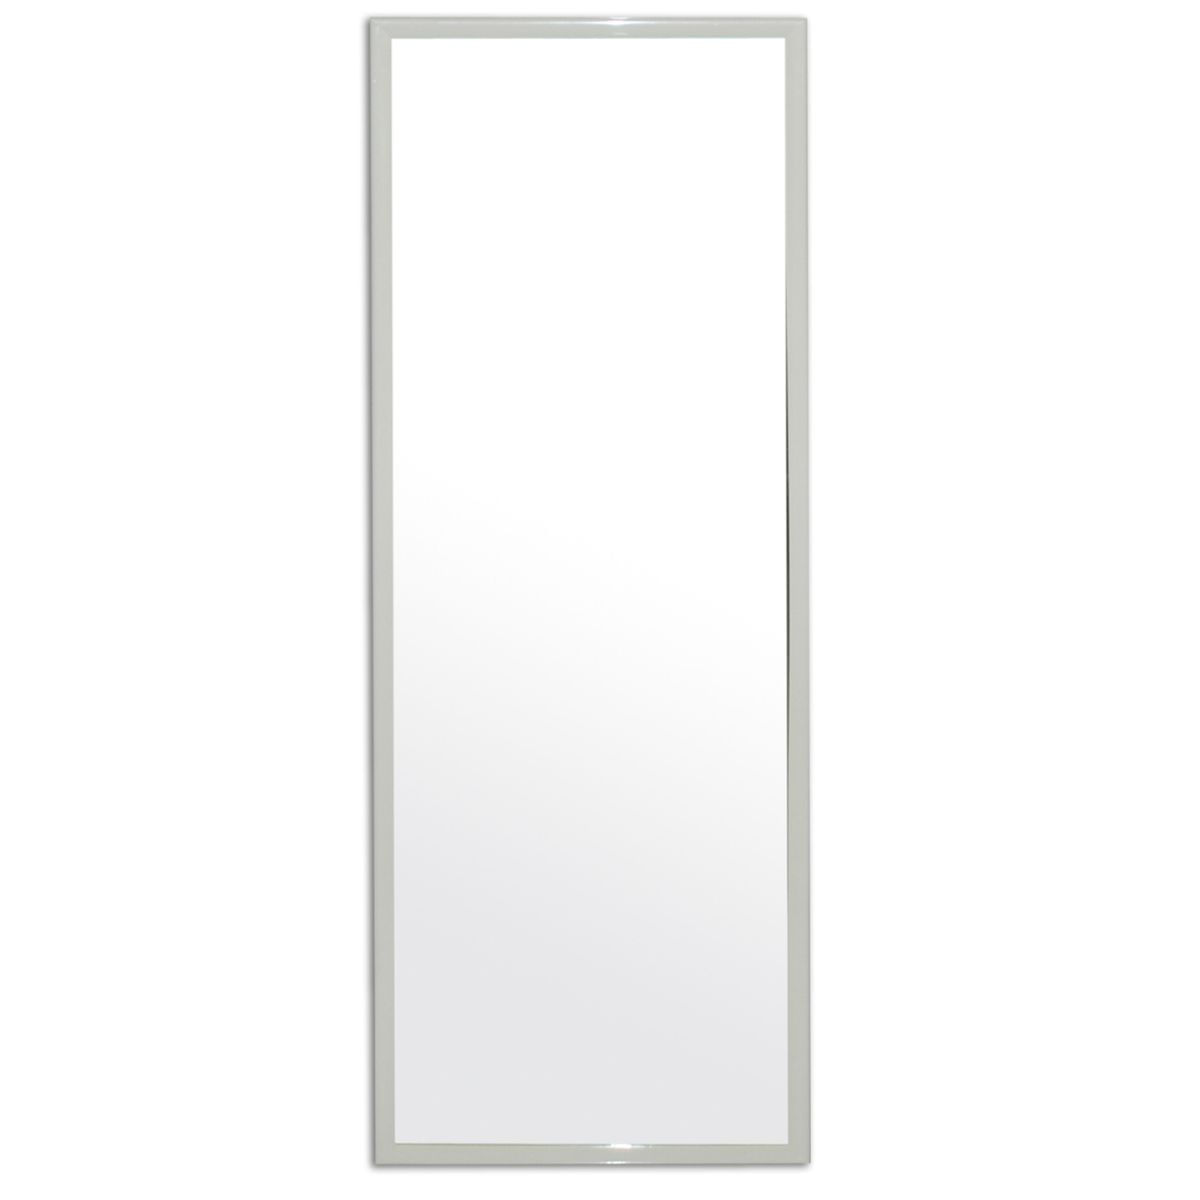 Espelho Emoldurado Retangular 90x30cm HO55216